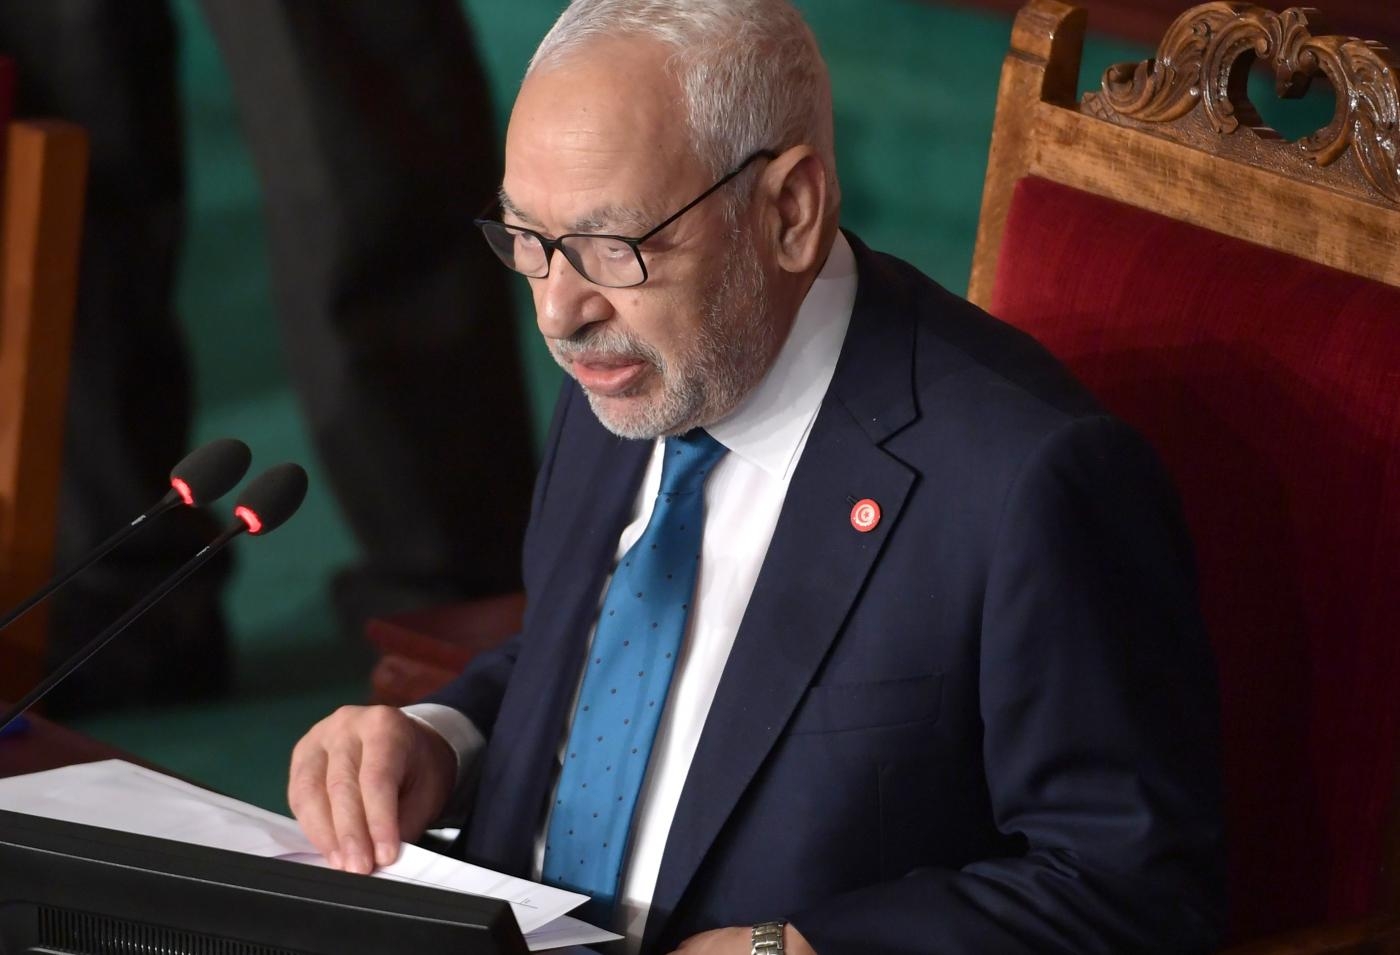 Le leader d’Ennahdha, Rached Ghannouchi, préside la première session du nouveau Parlement à Tunis, le 13 novembre 2019 (AFP)